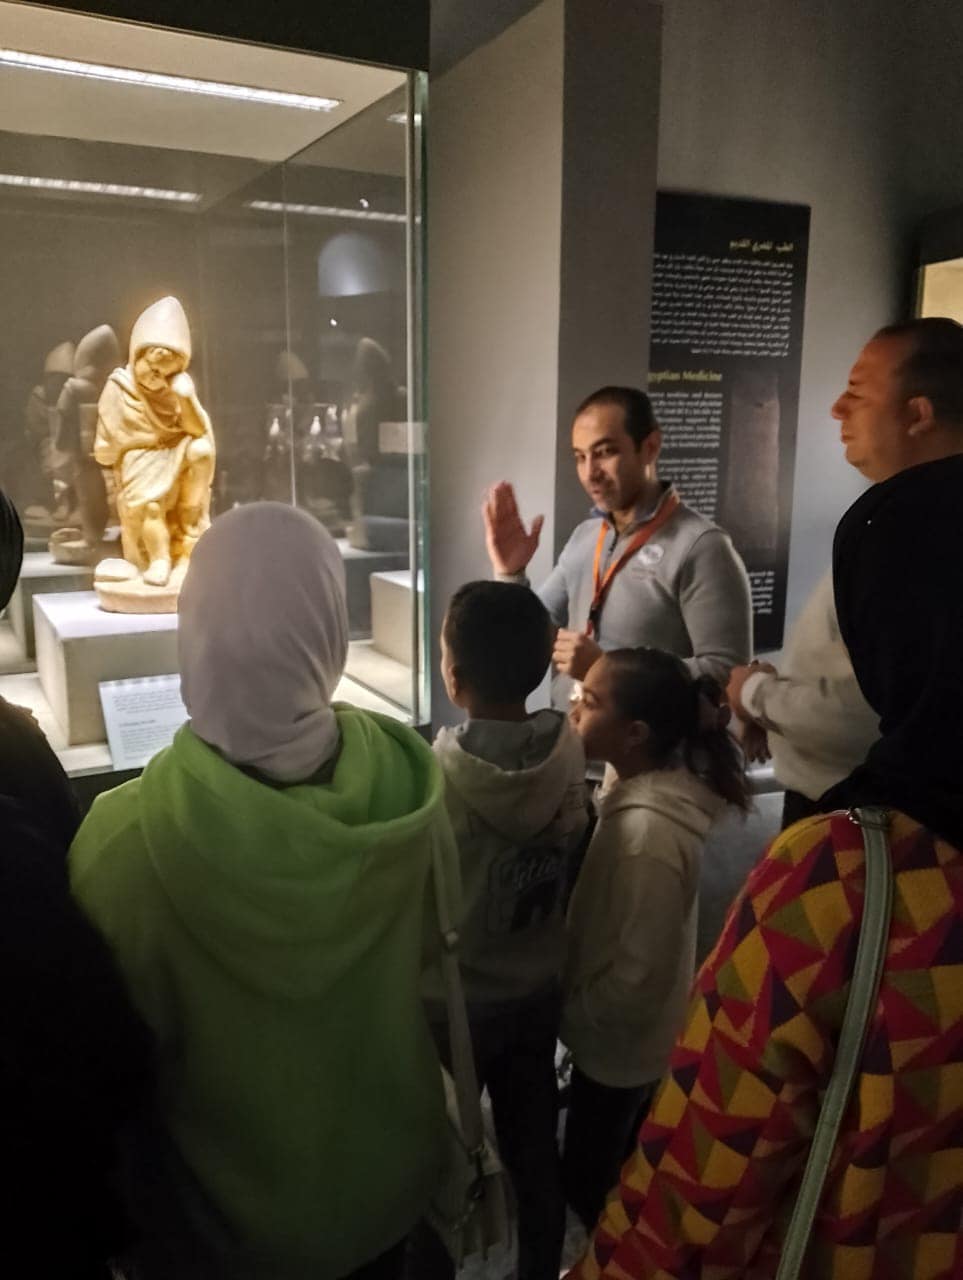 اقبال على مشاهدة التحف الاثرية بنمتحف كفر الشيخ